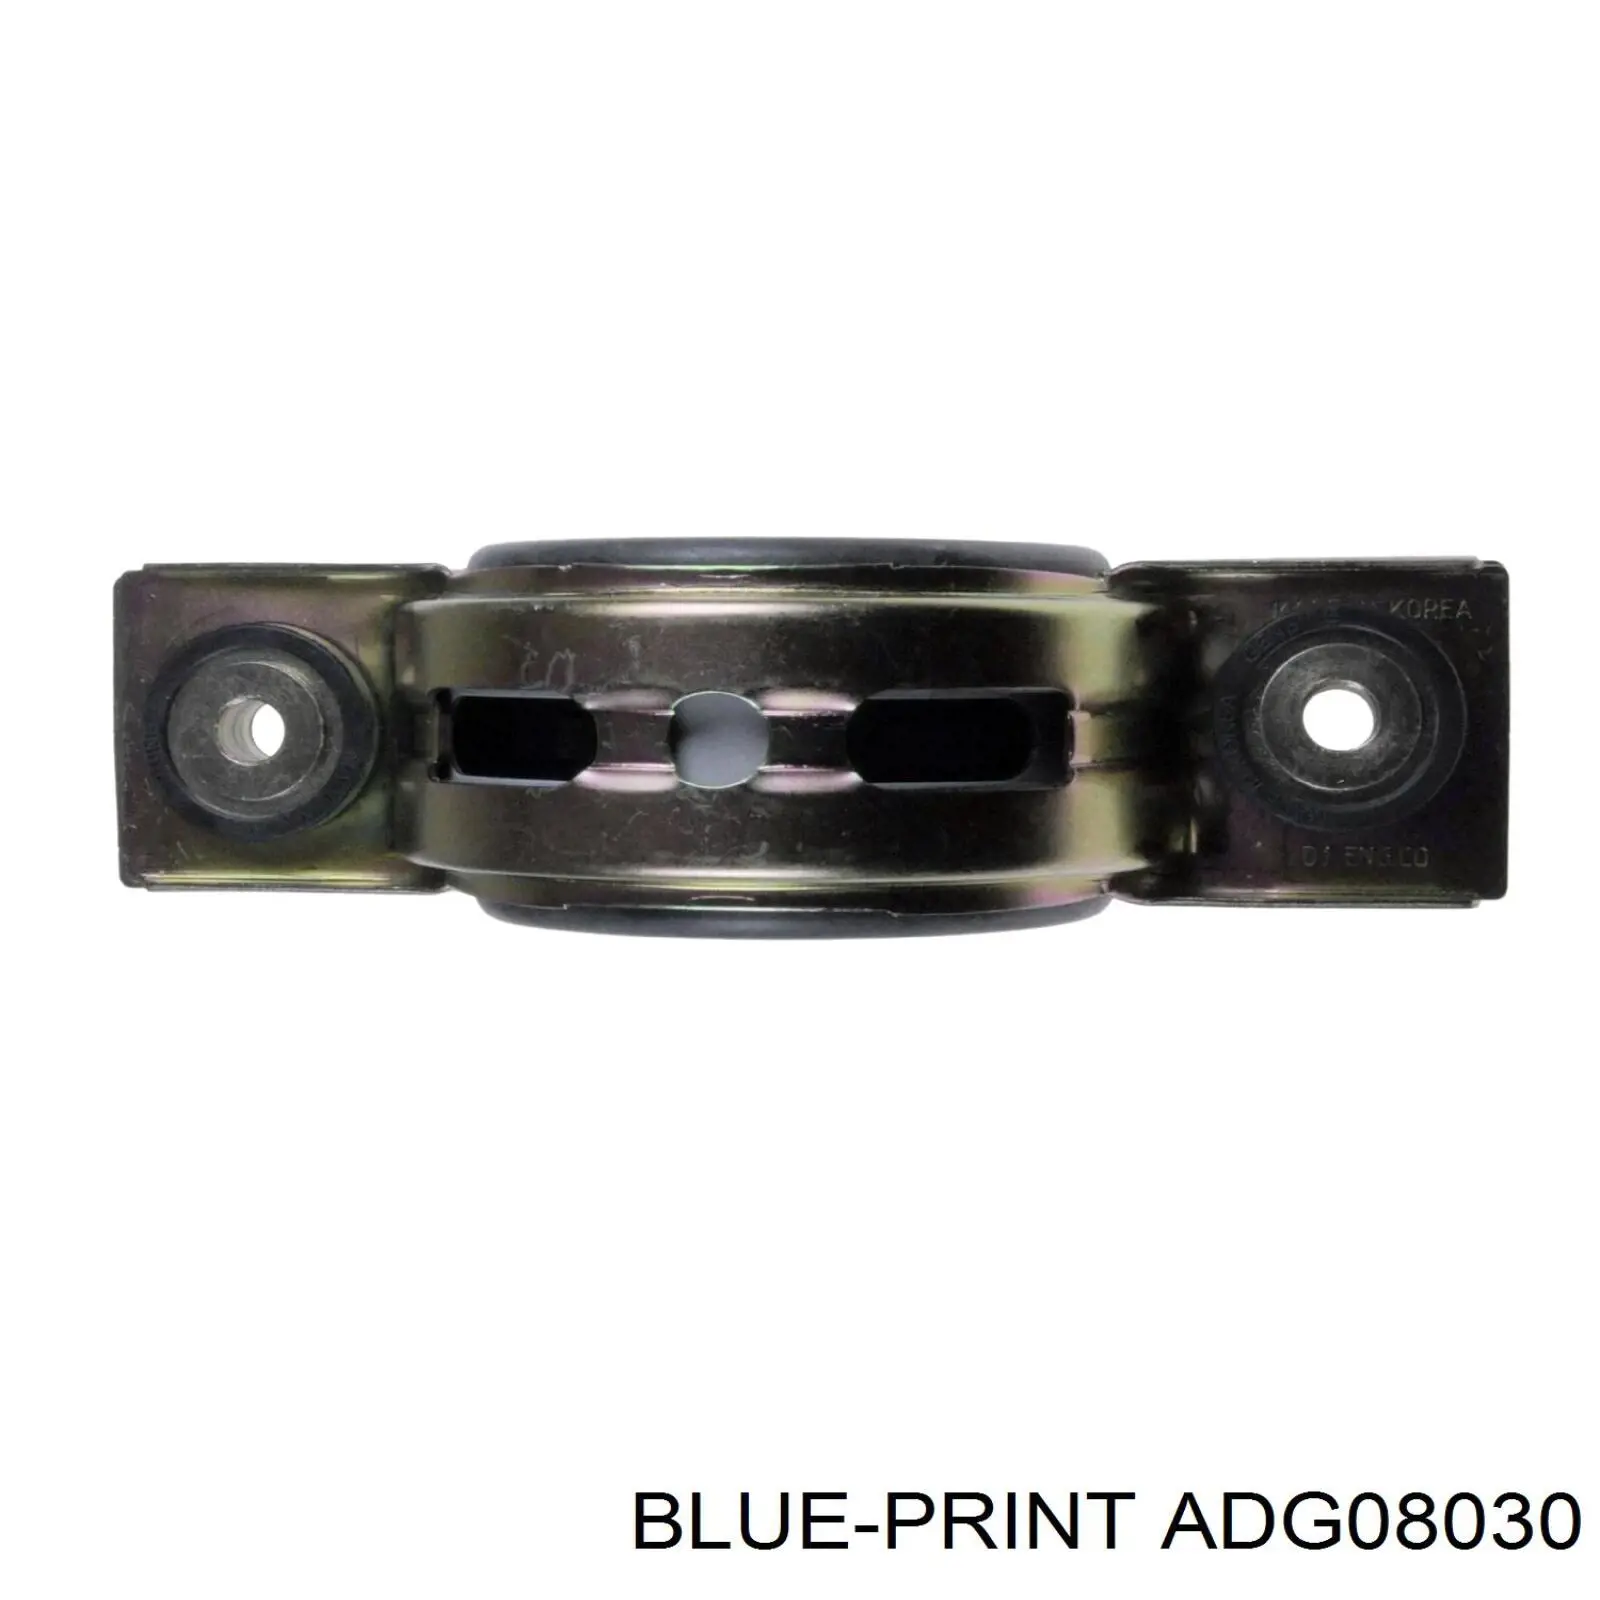 ADG08030 Blue Print suspensión, árbol de transmisión